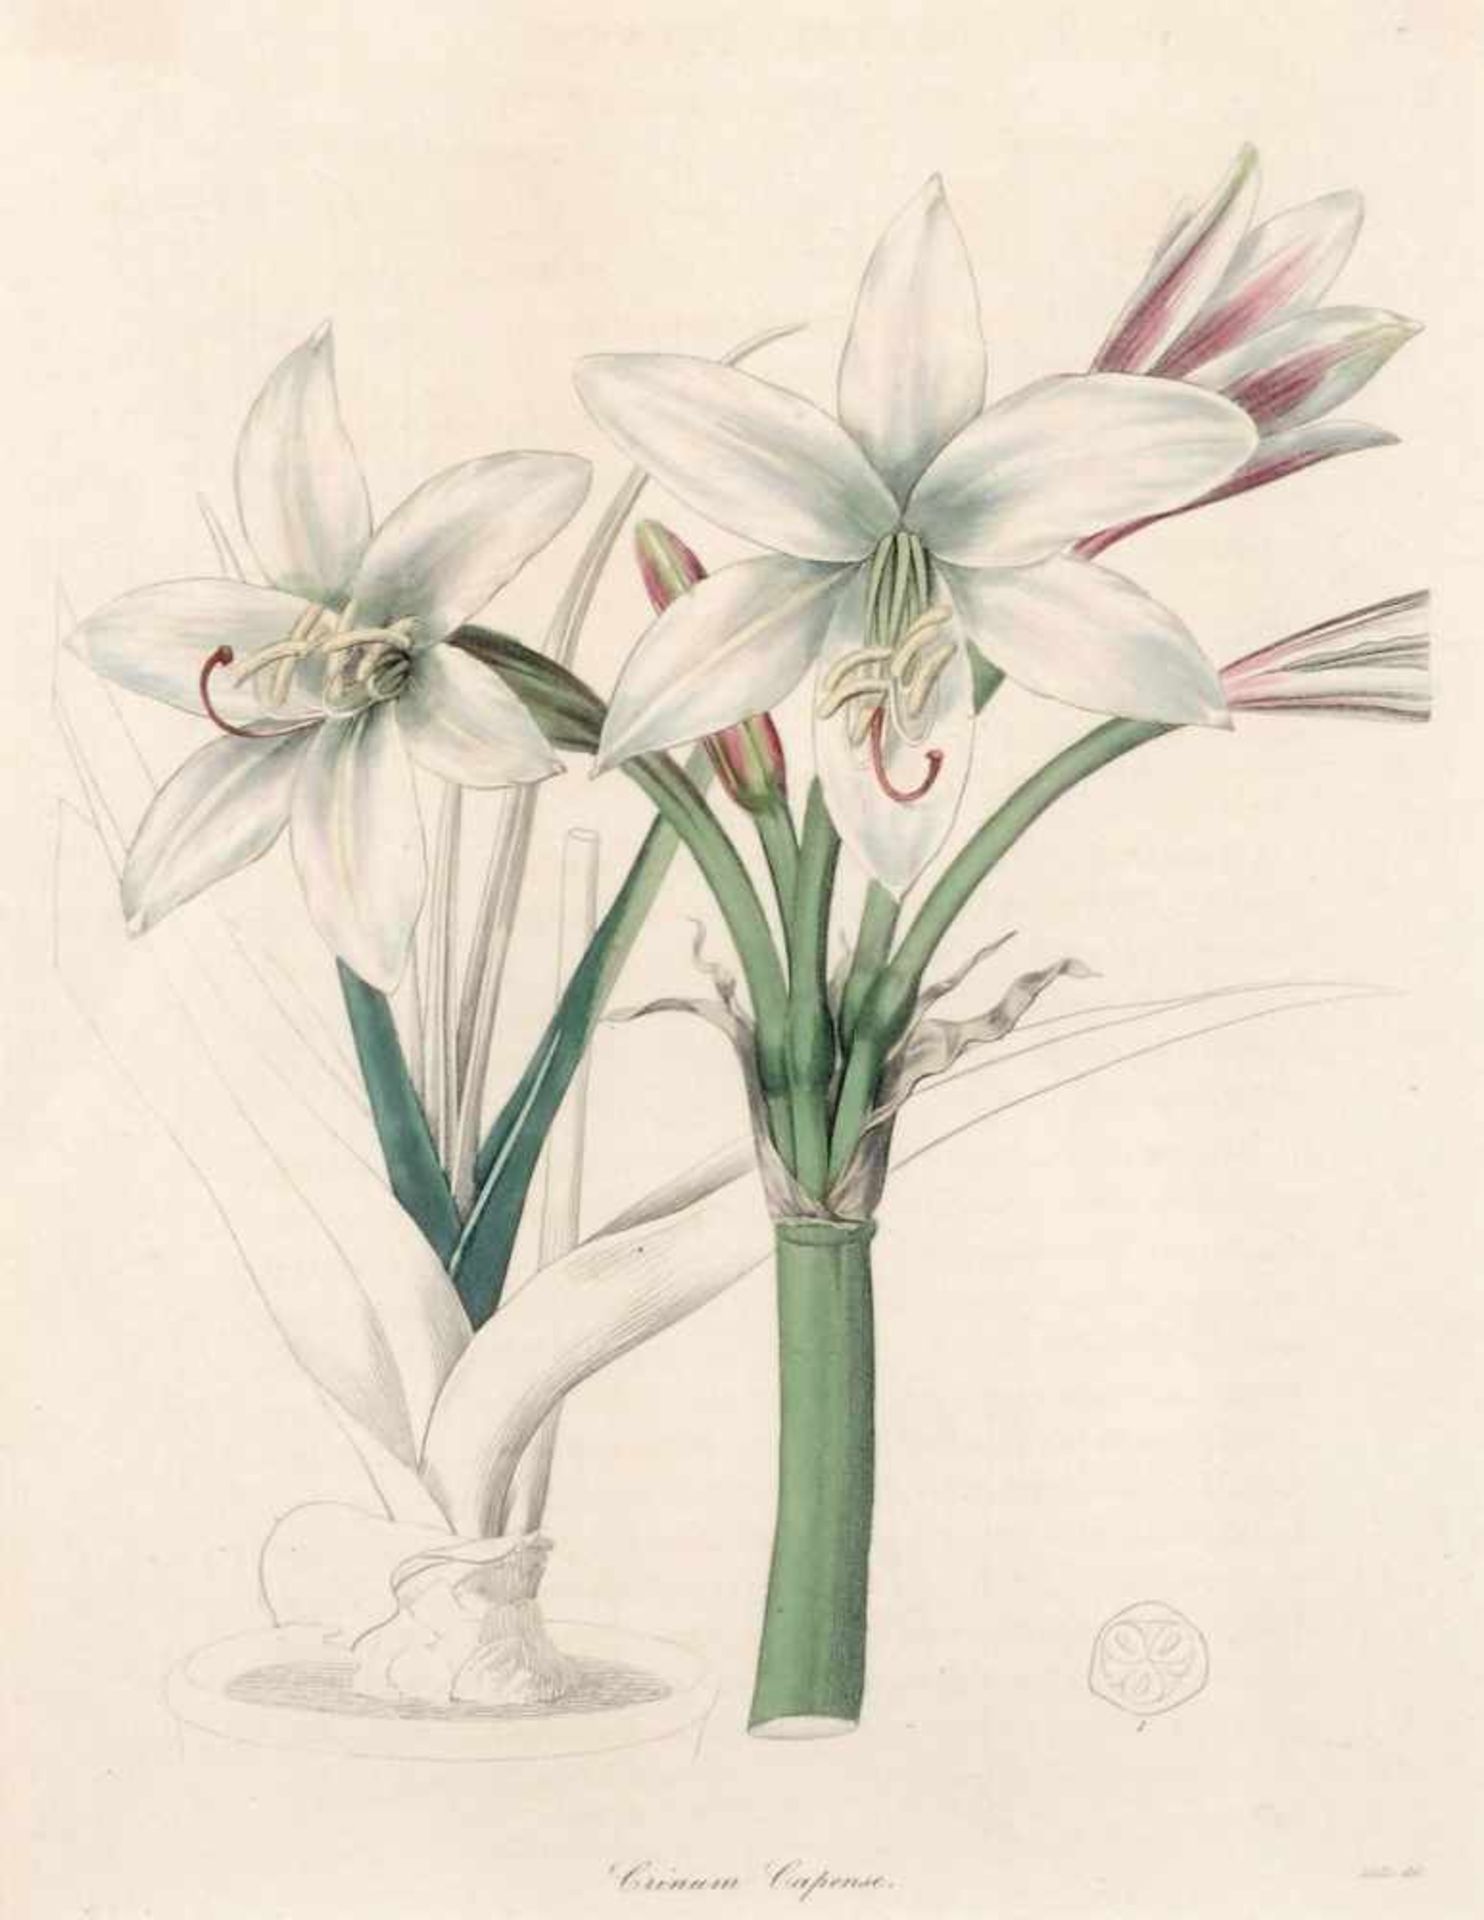 (Miss) R. Mills, Afrikanische Lilie und Ungarischer Flieder aus Benjamin Maund "The Botanist".